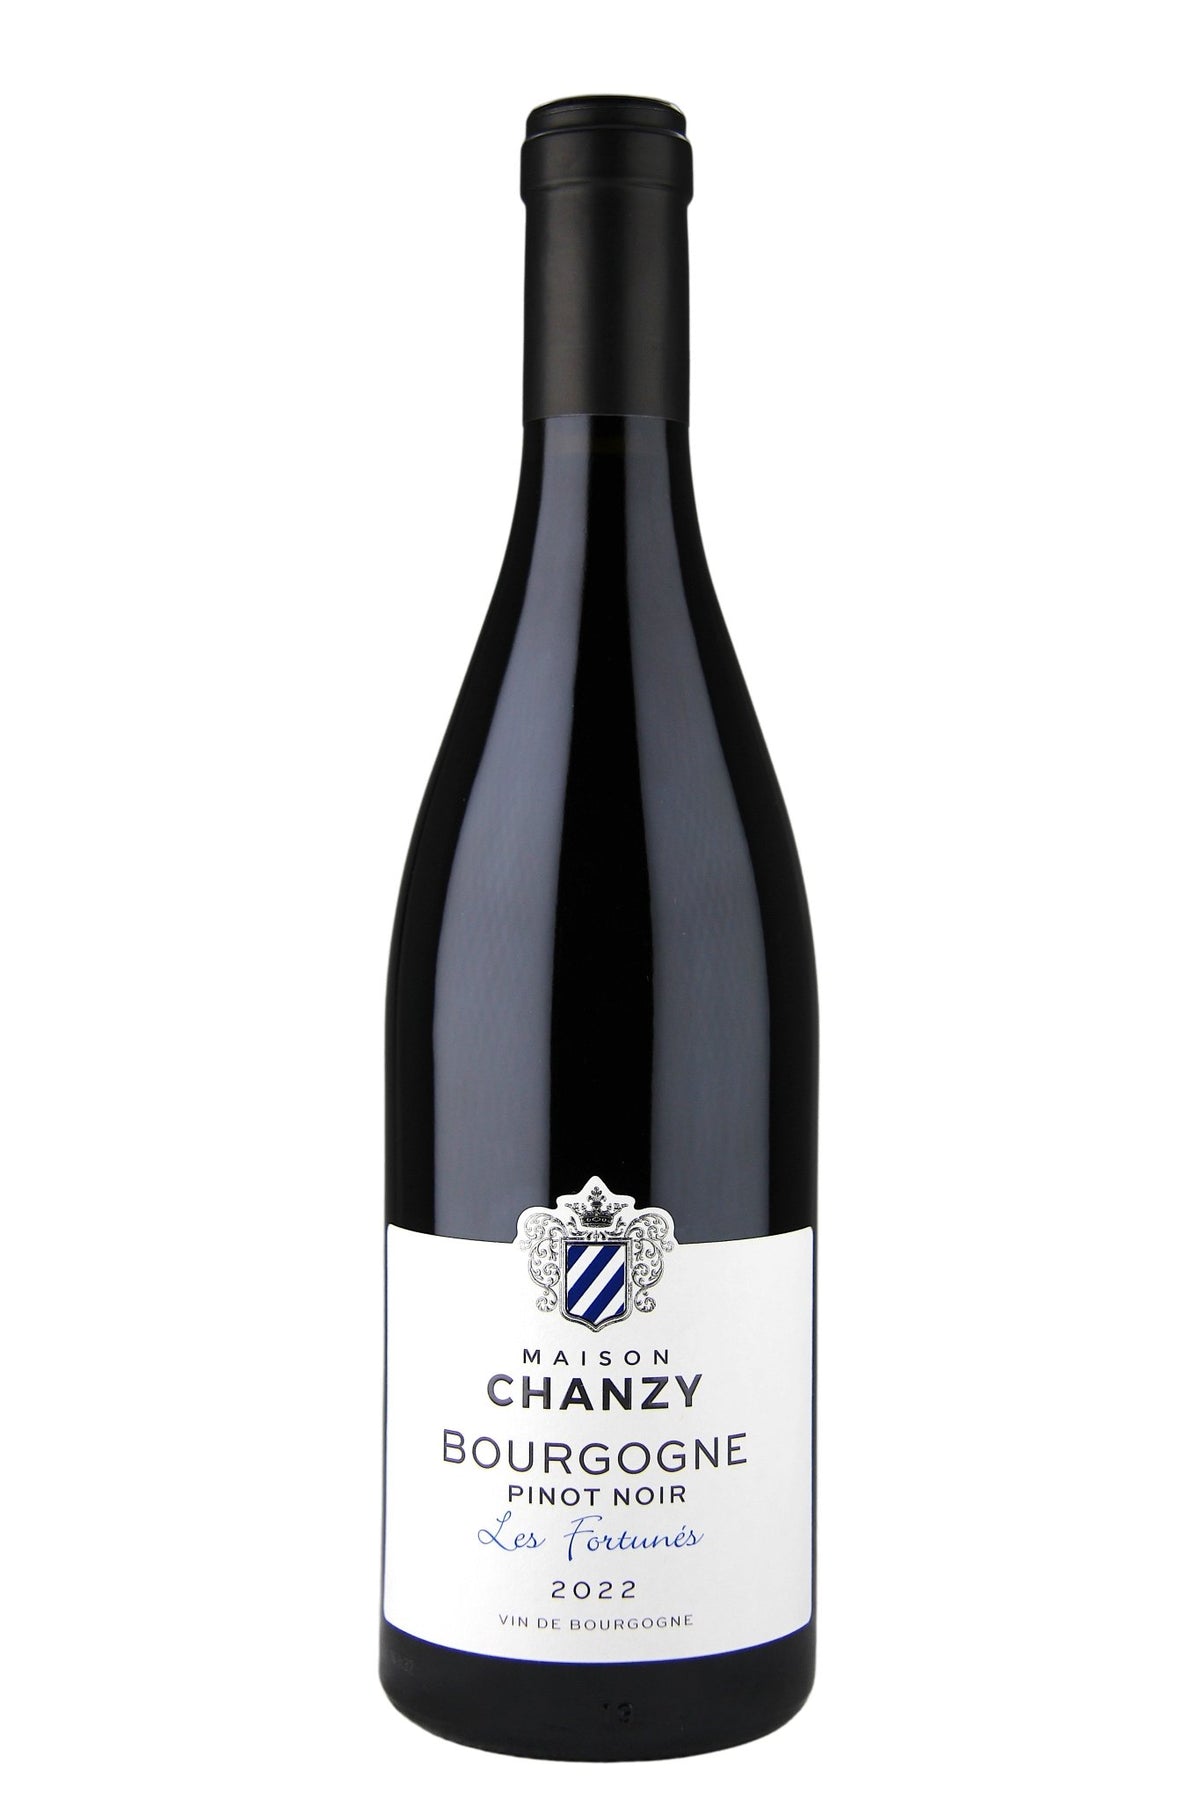 2022 Chanzy Bourgogne Pinot Noir Les Fortunés—